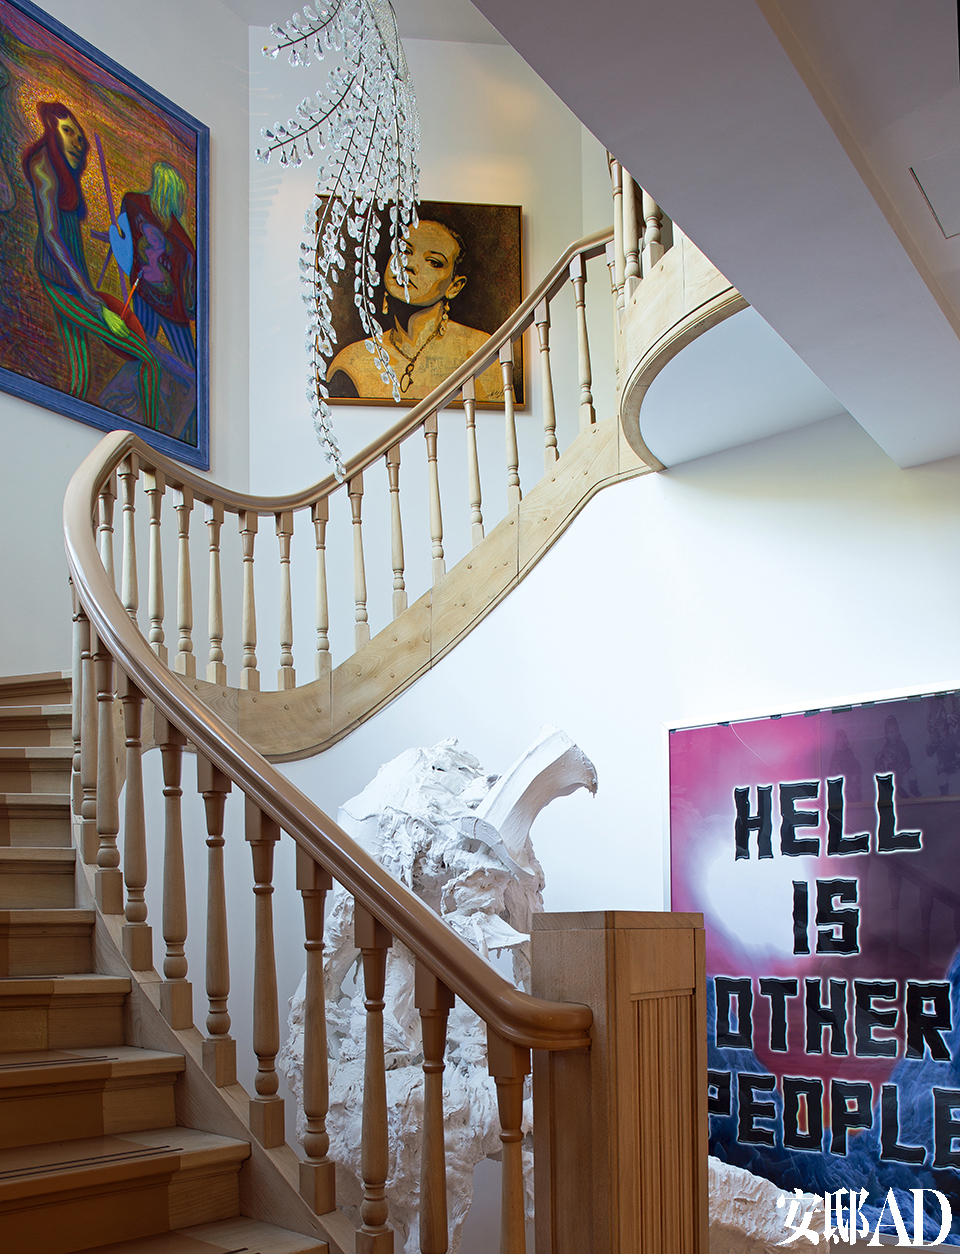 蜿蜒的楼梯恰好用来展示大件艺术收藏，造型古典的楼梯也中和了空间里当代艺术的强大张力。Studio Makkink & Bey在原有楼梯的基础
上做了重新设计。一层的雕塑是比利时艺术家Peter Rogiers的White Trash II ，墙上的画作Hell is Other People 出自英国艺术家Mark Titchner。楼梯上的玻璃吊灯Phonix是荷兰设计师Hans van Bentem的作品。楼梯左边墙上的画作The Fauves 则来自加拿大艺术家Steven Shearer。